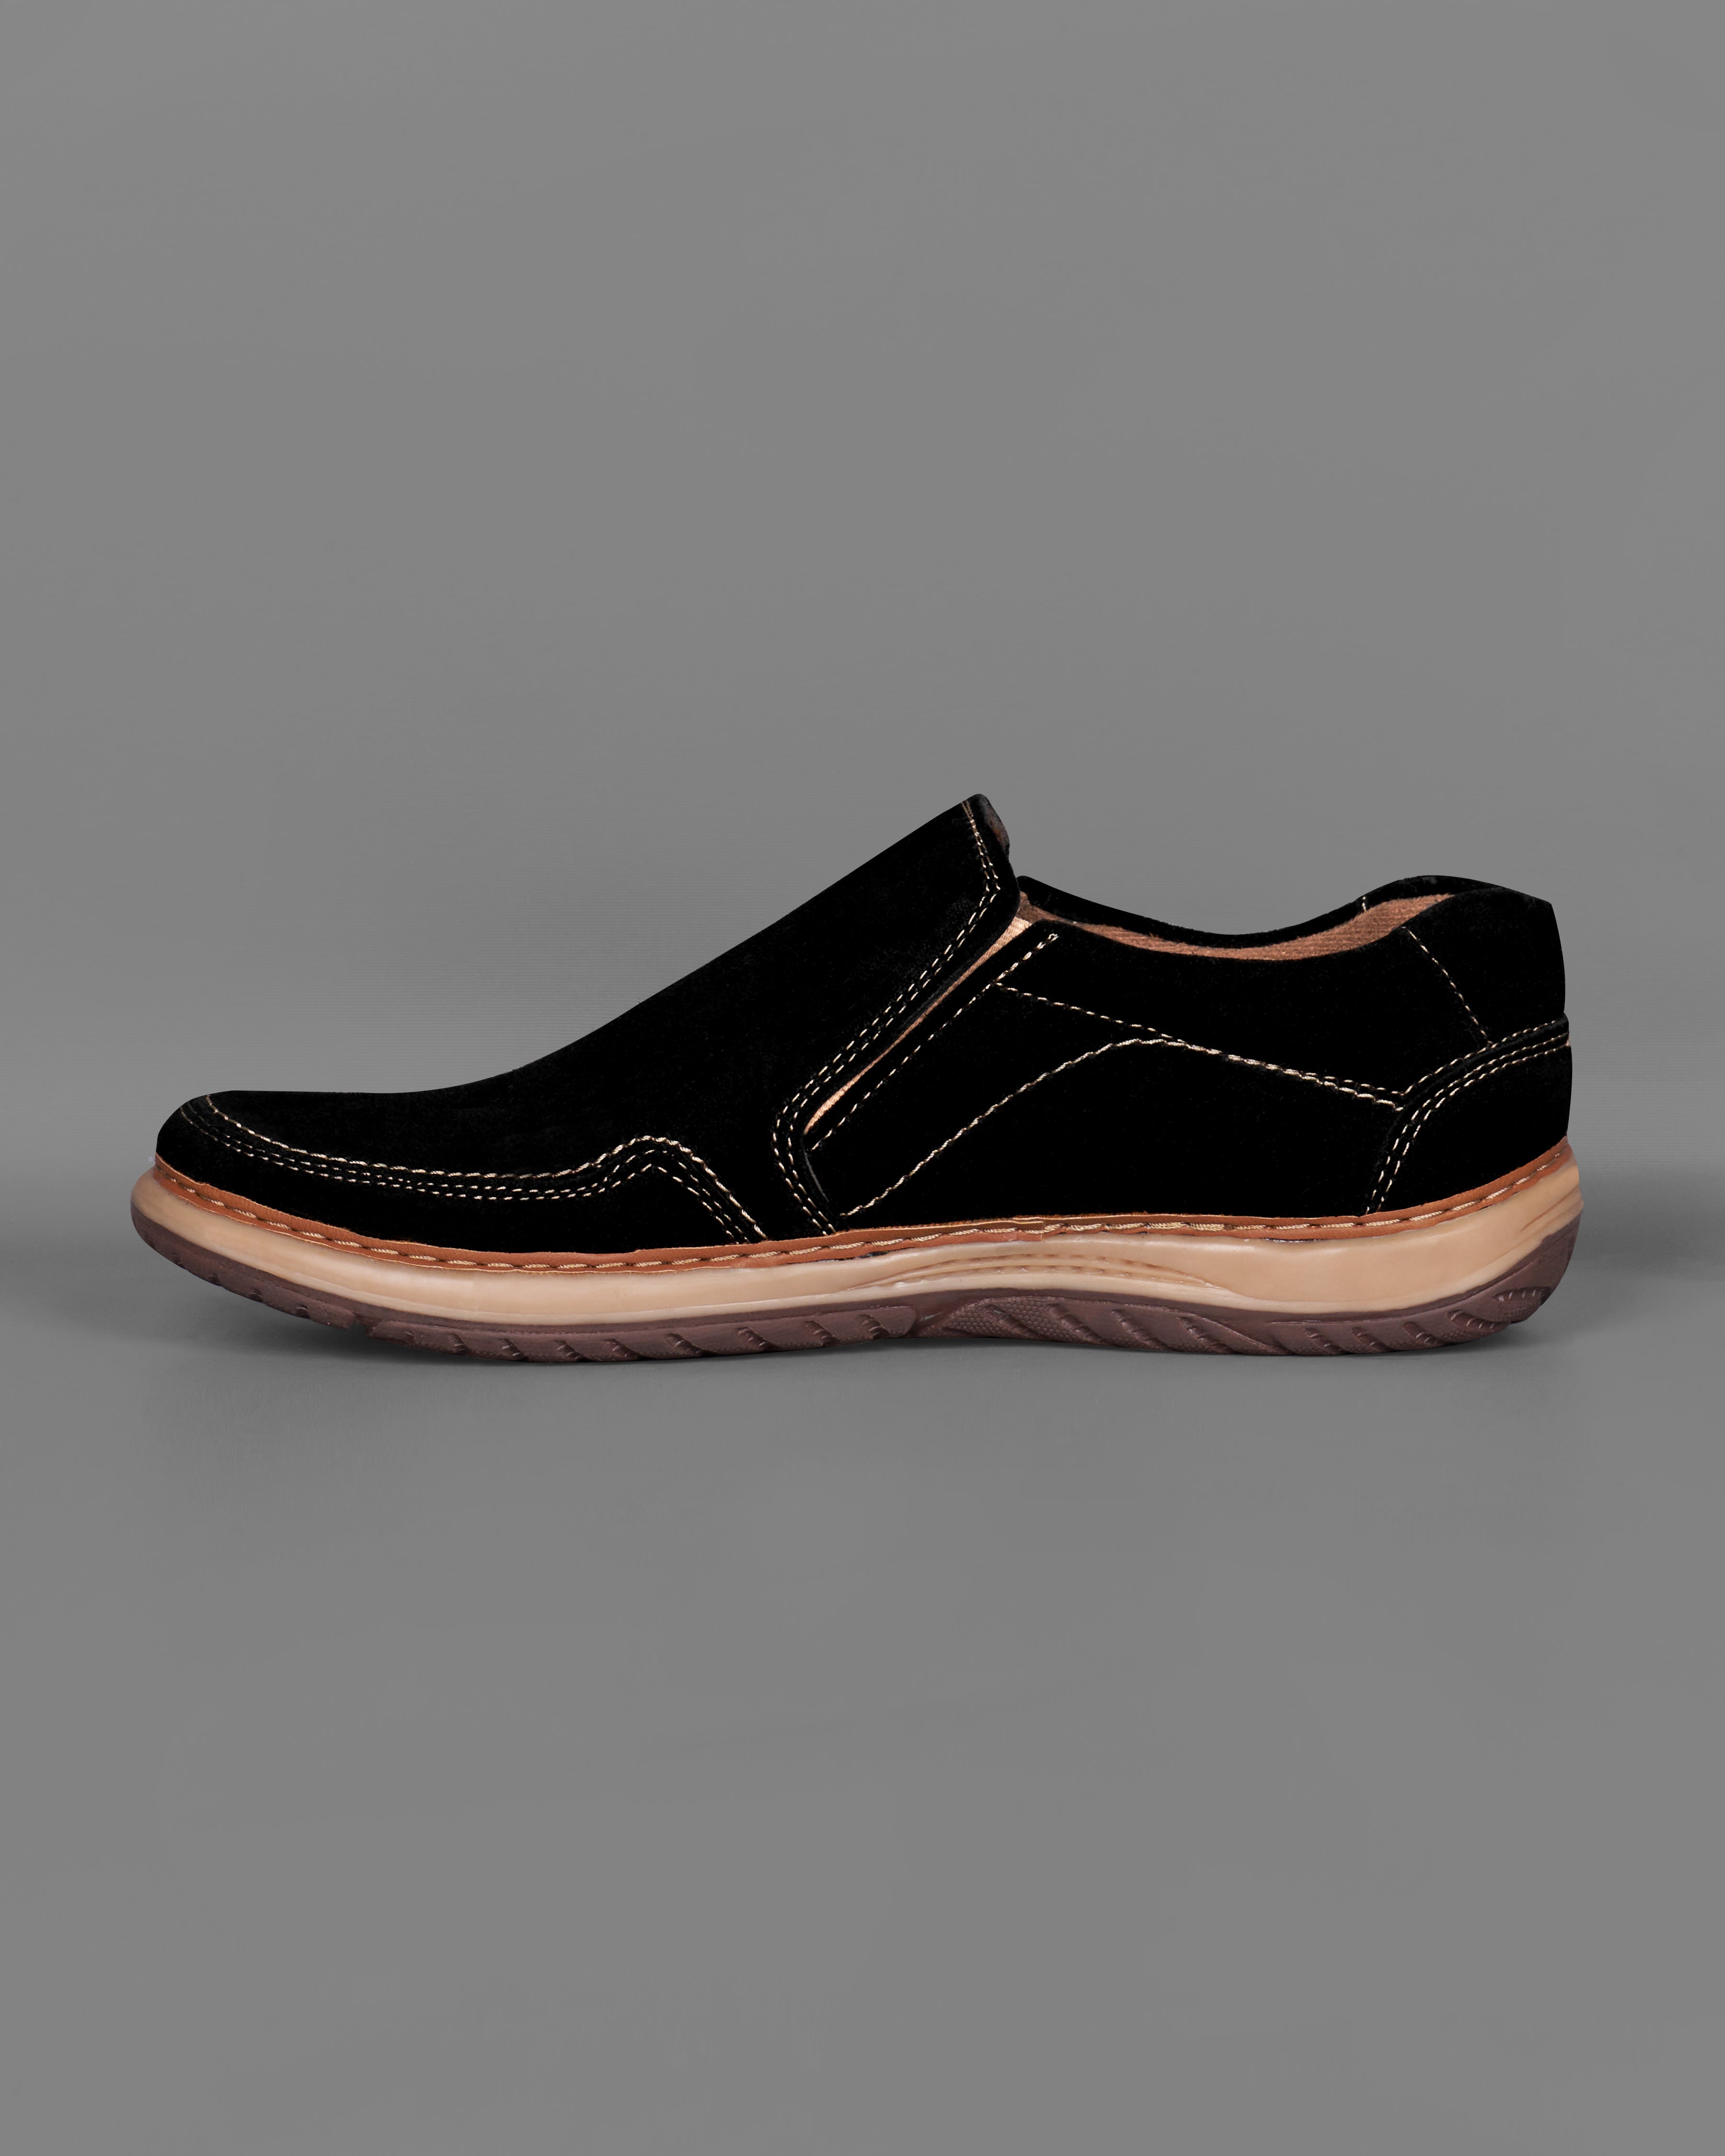 Jade Black Slip On Suede leather Shoes FT075-6, FT075-7, FT075-8, FT075-9, FT075-10, FT075-11